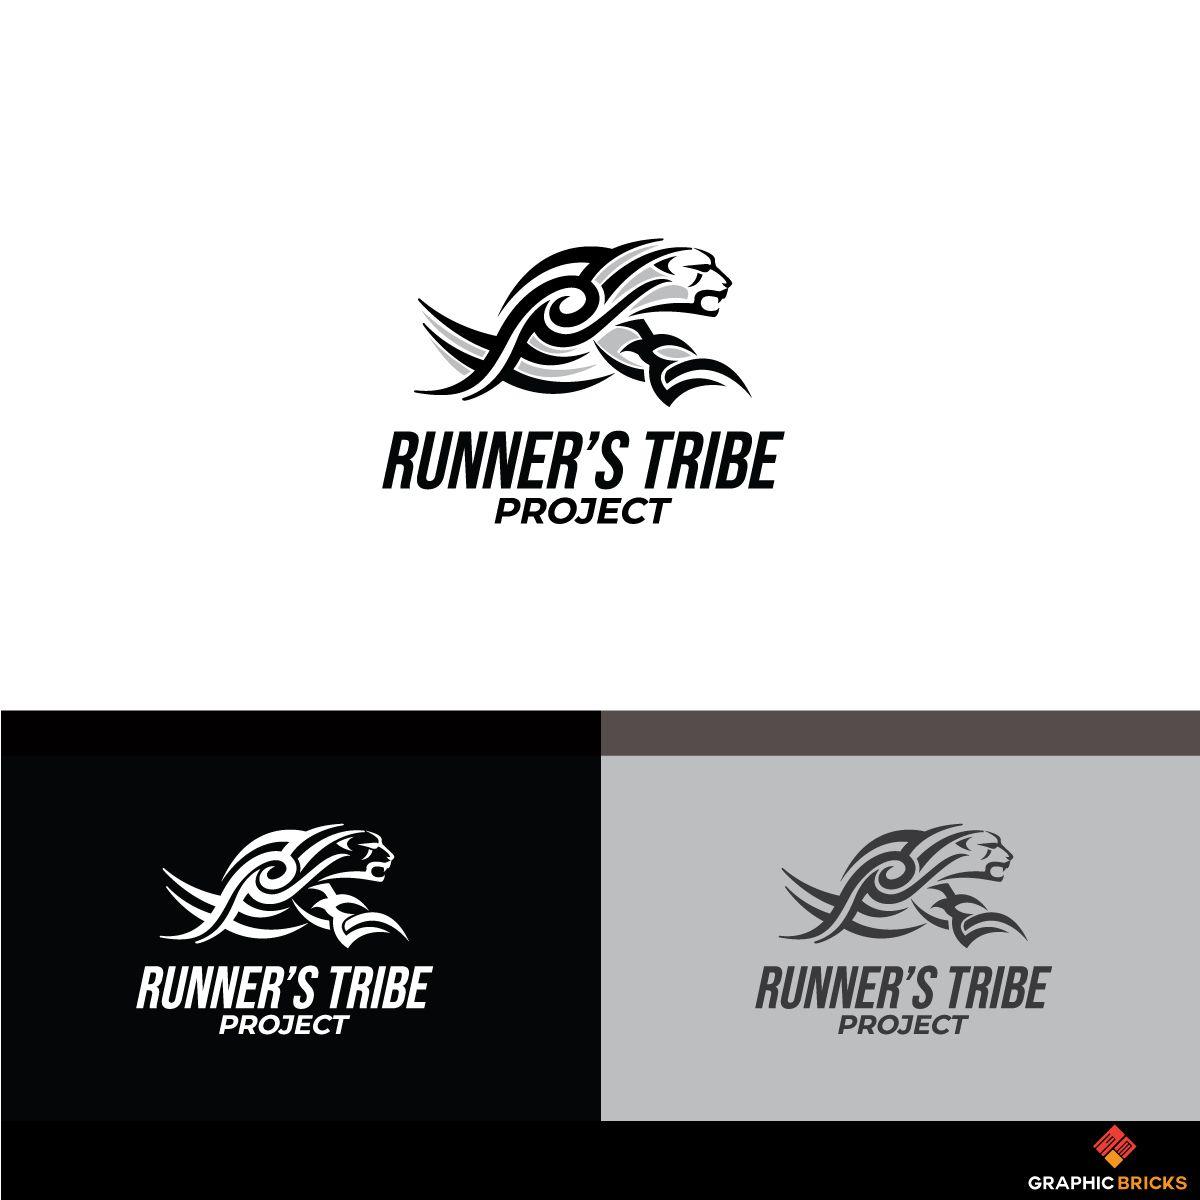 Avago Logo - Elegant, Playful, Sporting Good Logo Design for RUNNER'S TRIBE